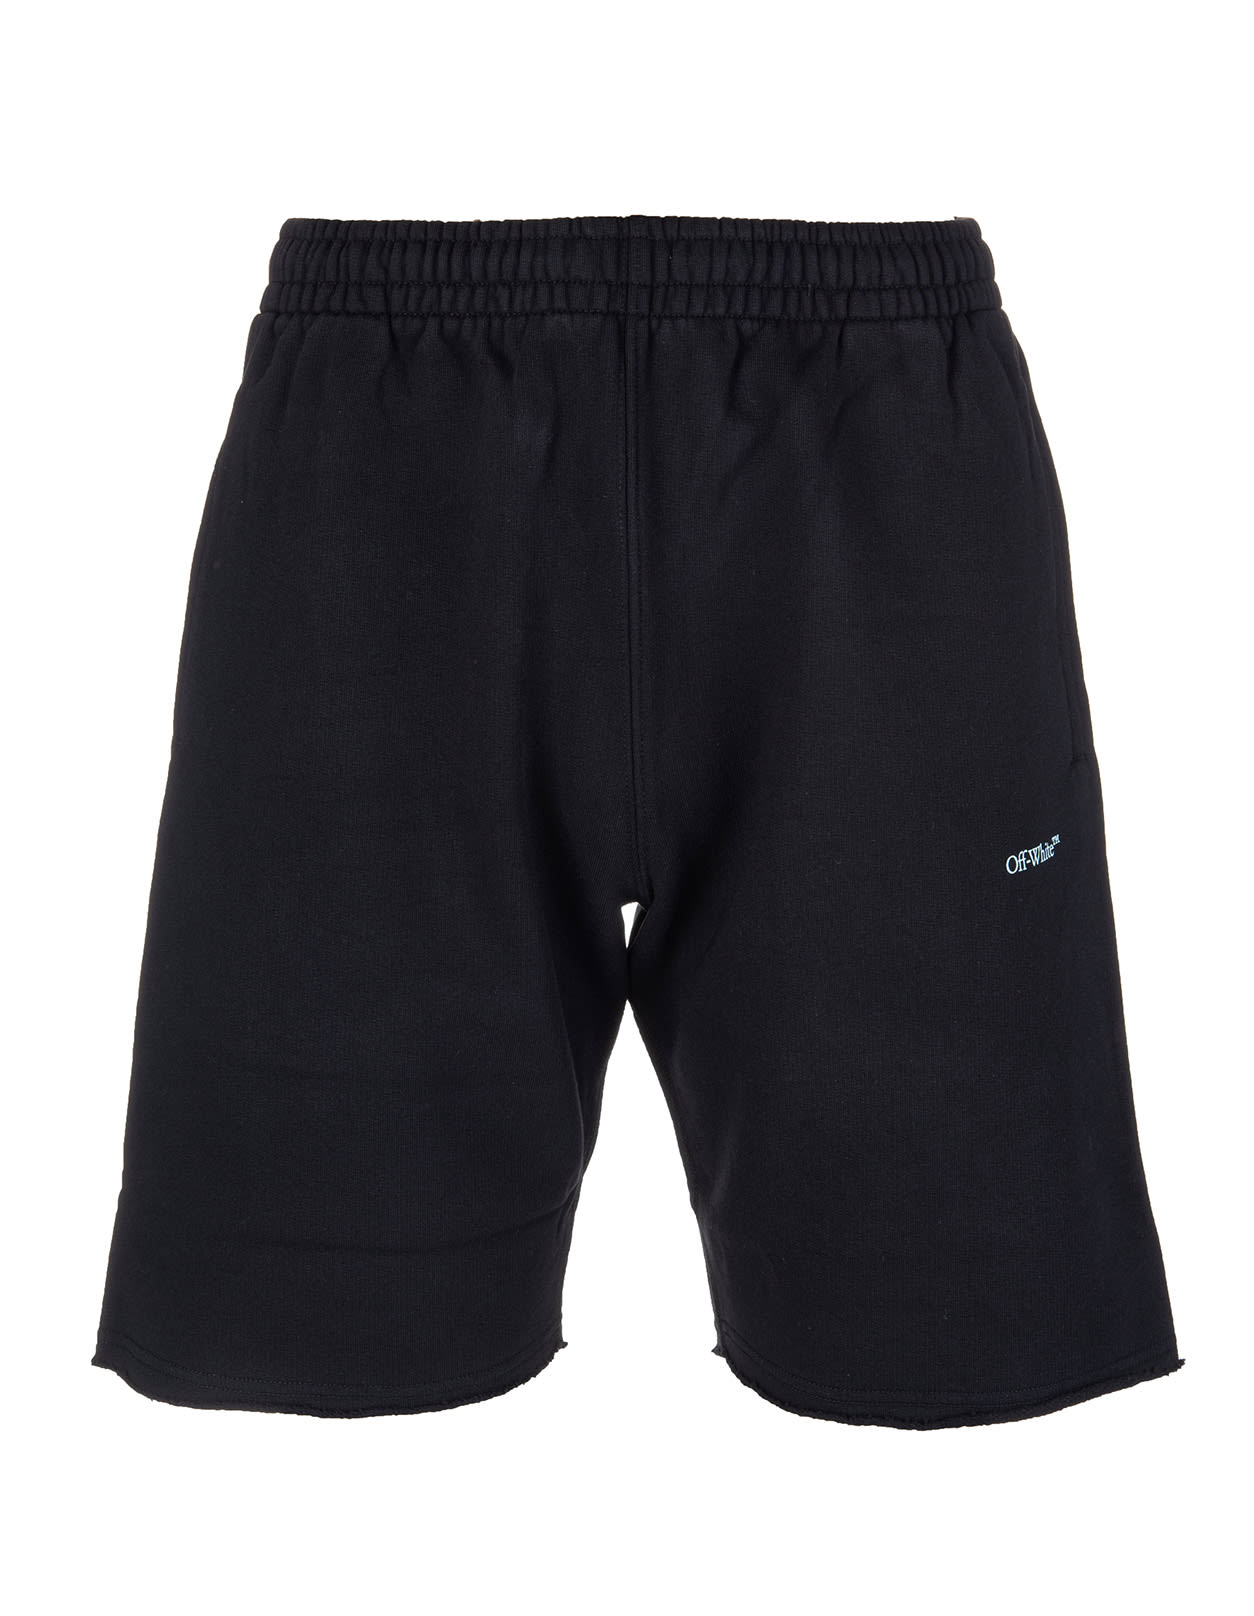 OFF-WHITE Shorts for Men | ModeSens